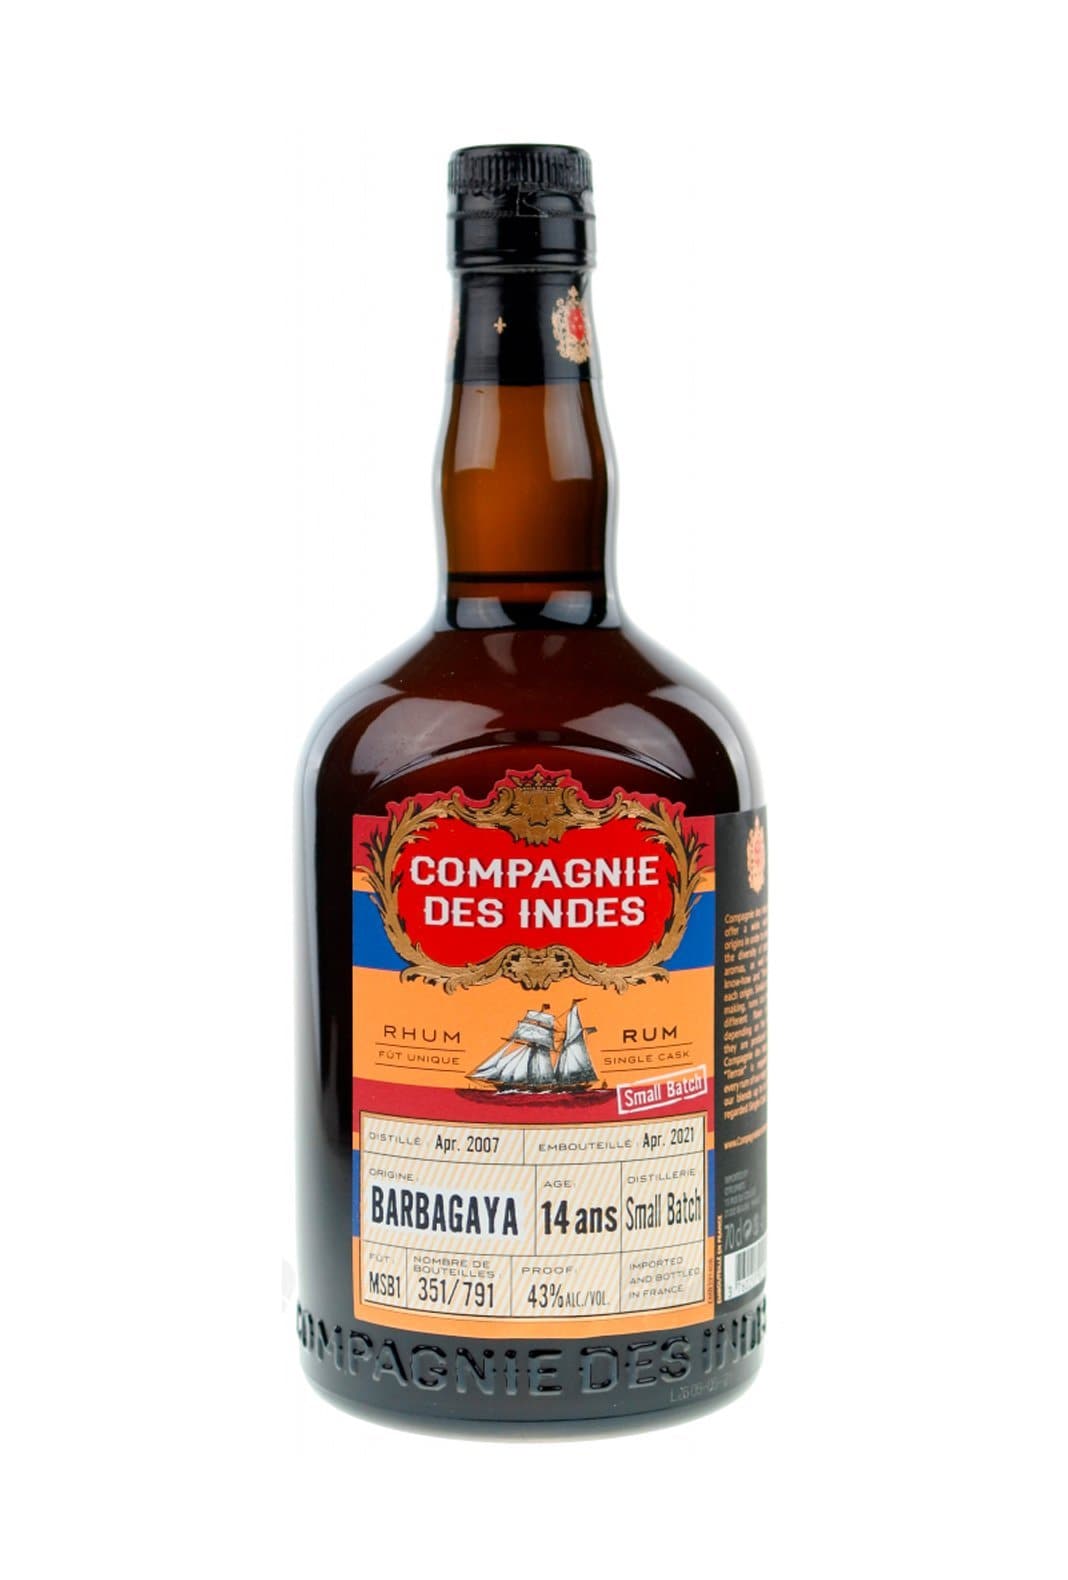 Compagnie des Indes Rum Barbagaya 14 years 43% 700ml | Rum | Shop online at Spirits of France